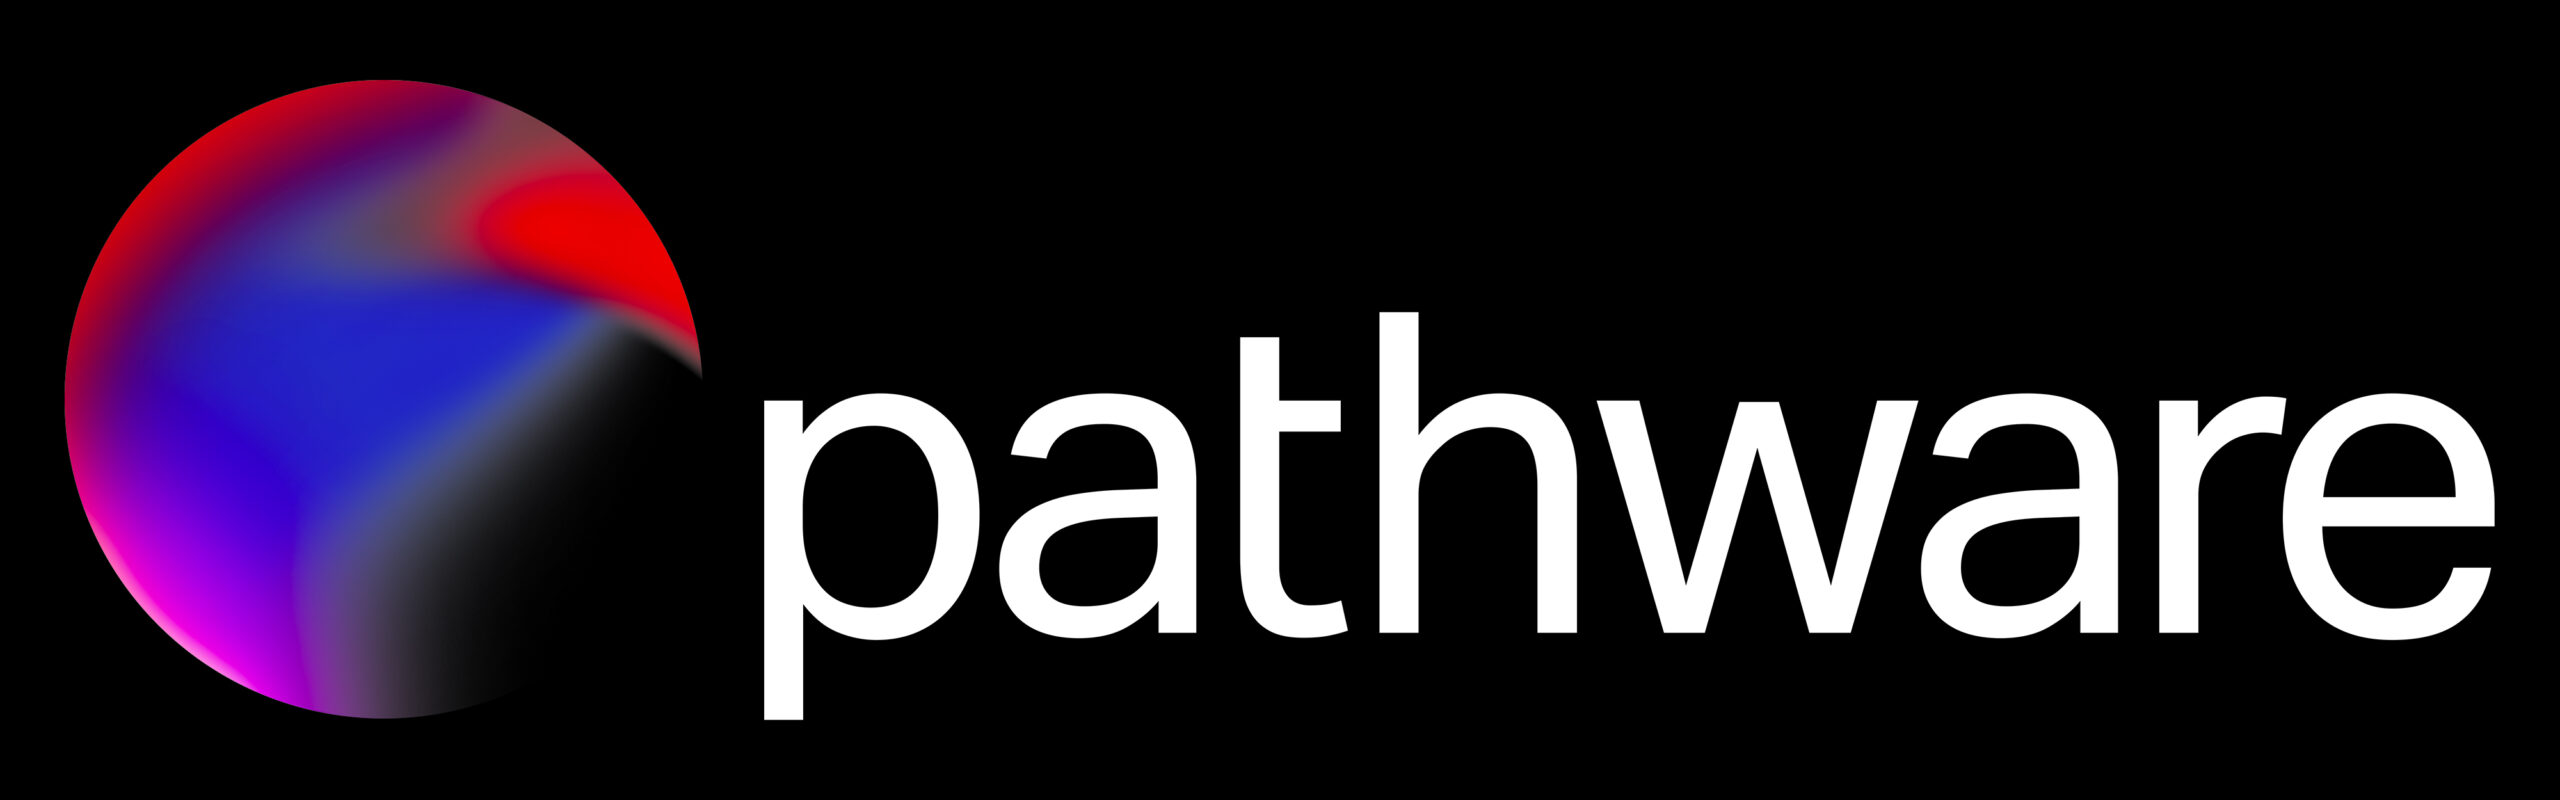 Pathware logo